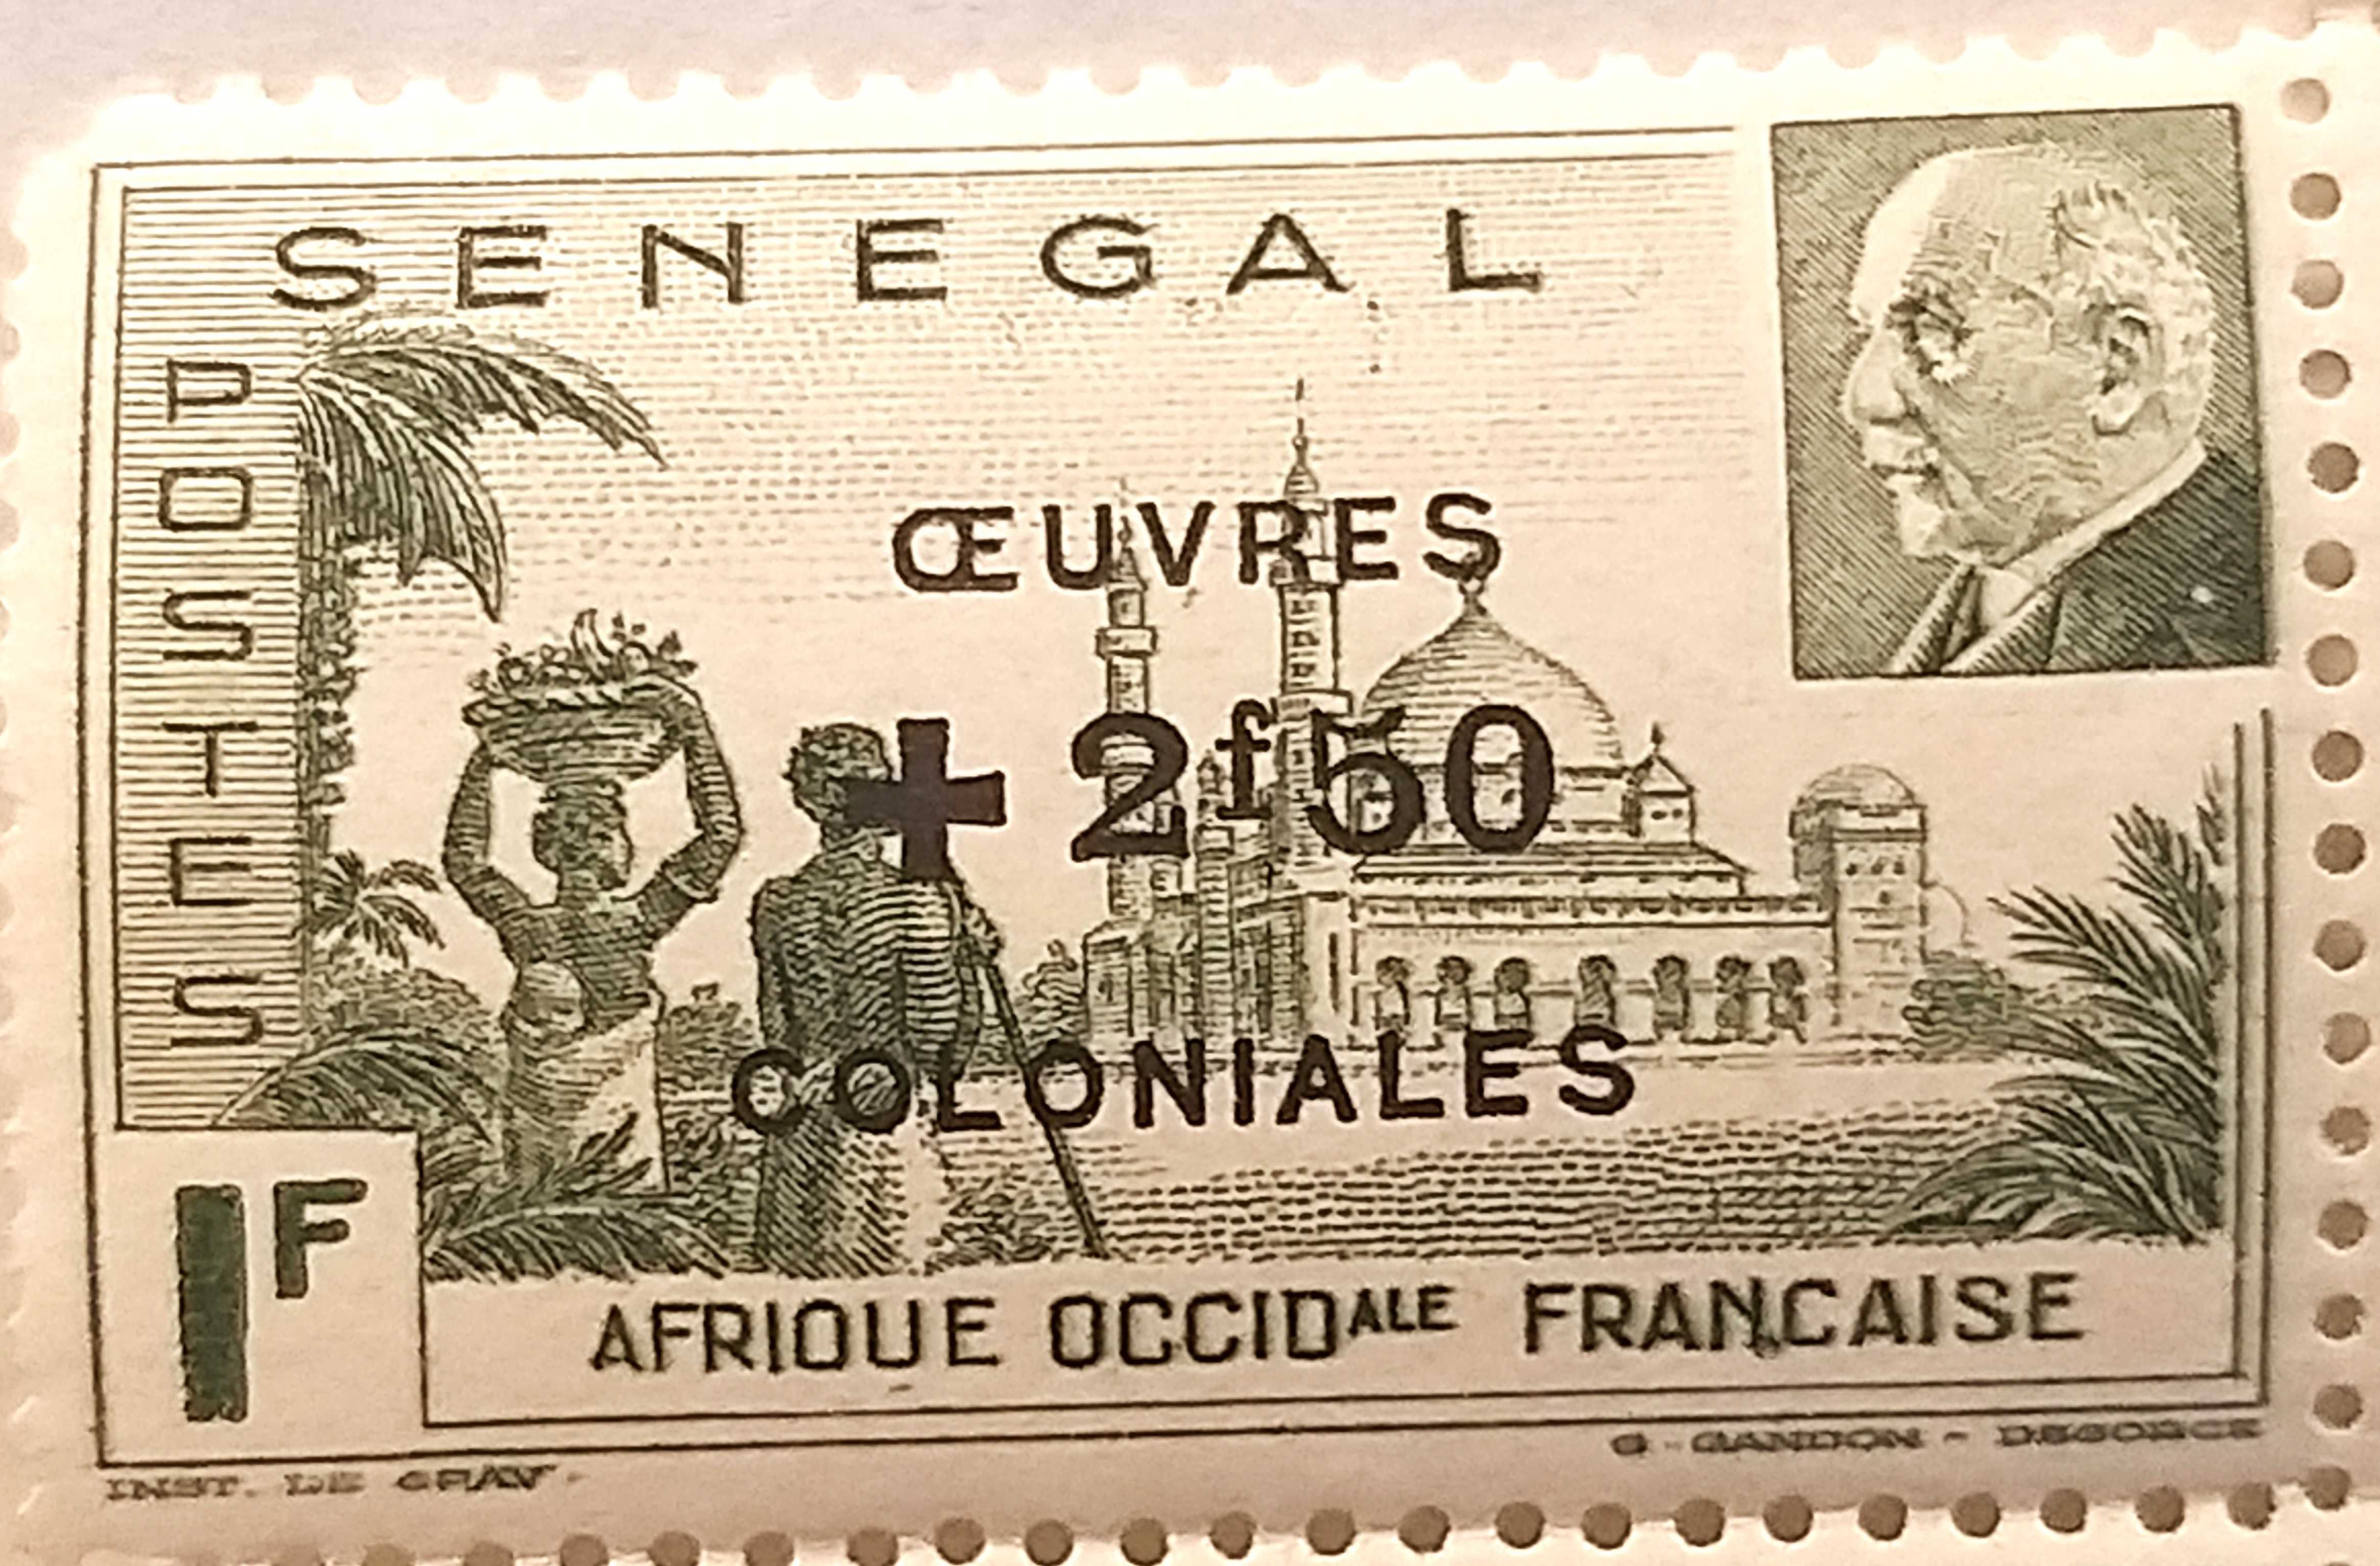 Znaczek kolonialny Senegal Meczet Djourbel Vichy Marszałek Pétain 1944